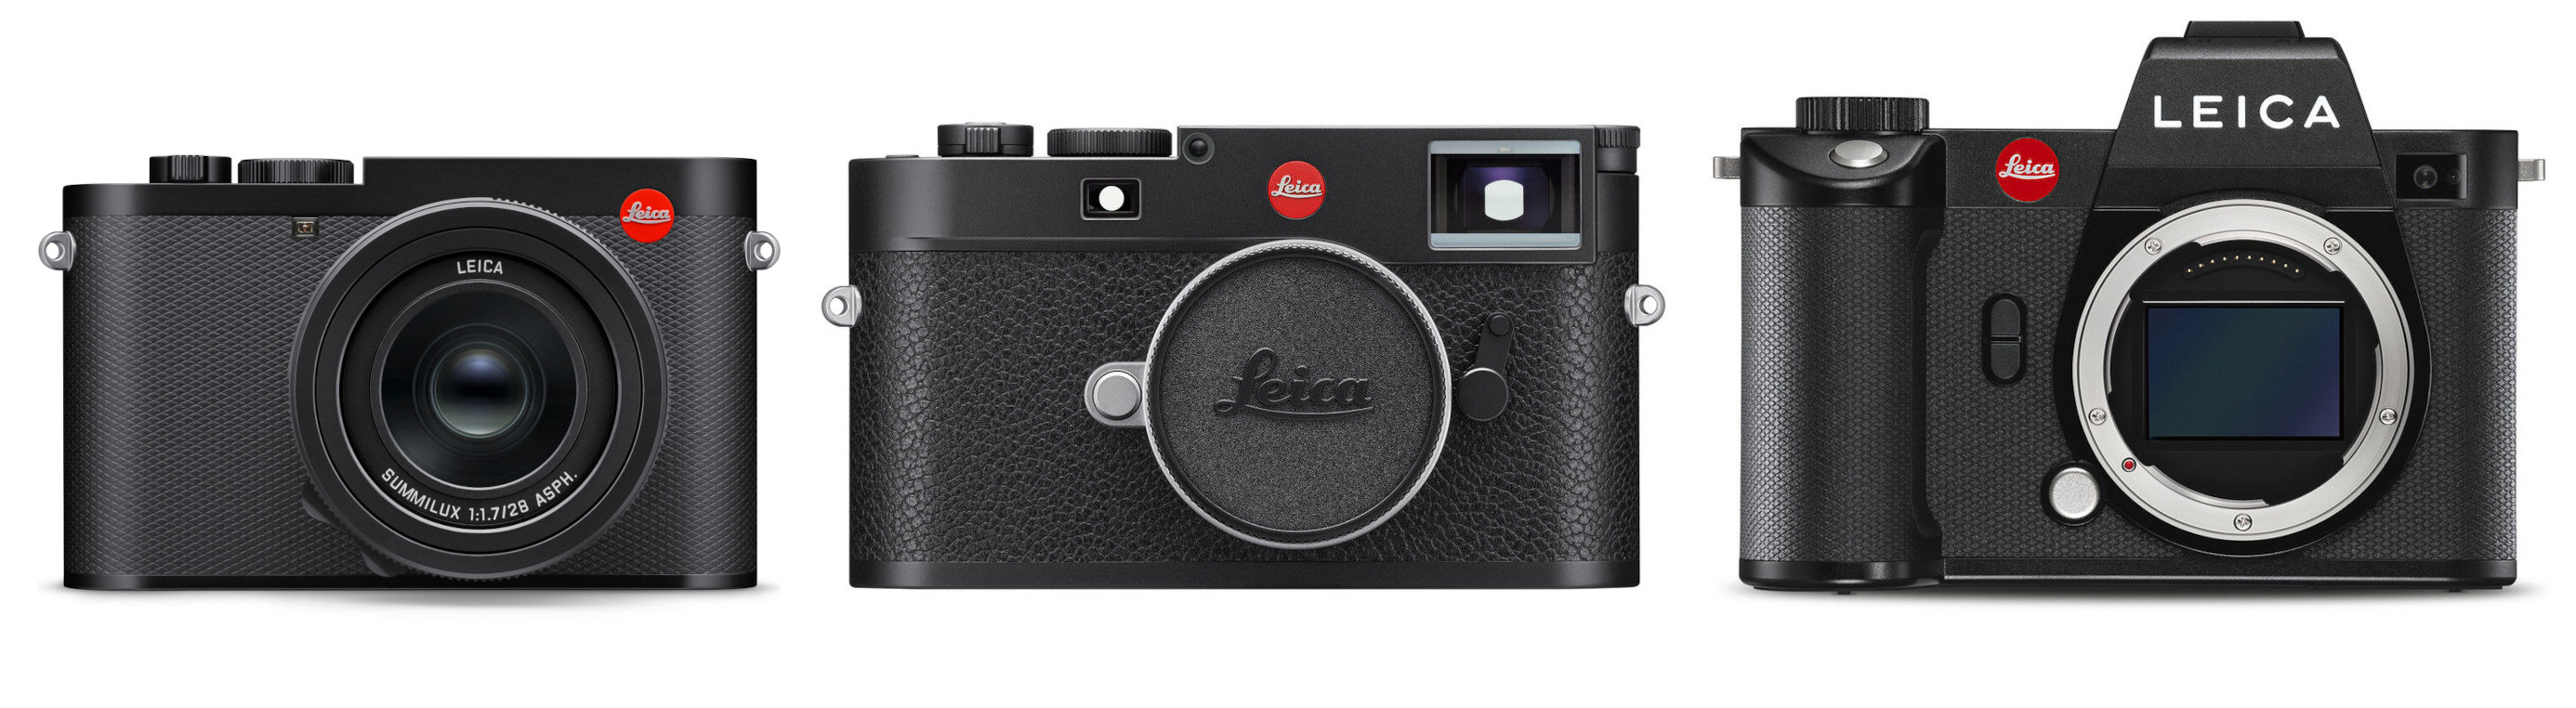 Leica Q3 vs Leica M11 vs Leica SL2 - 3